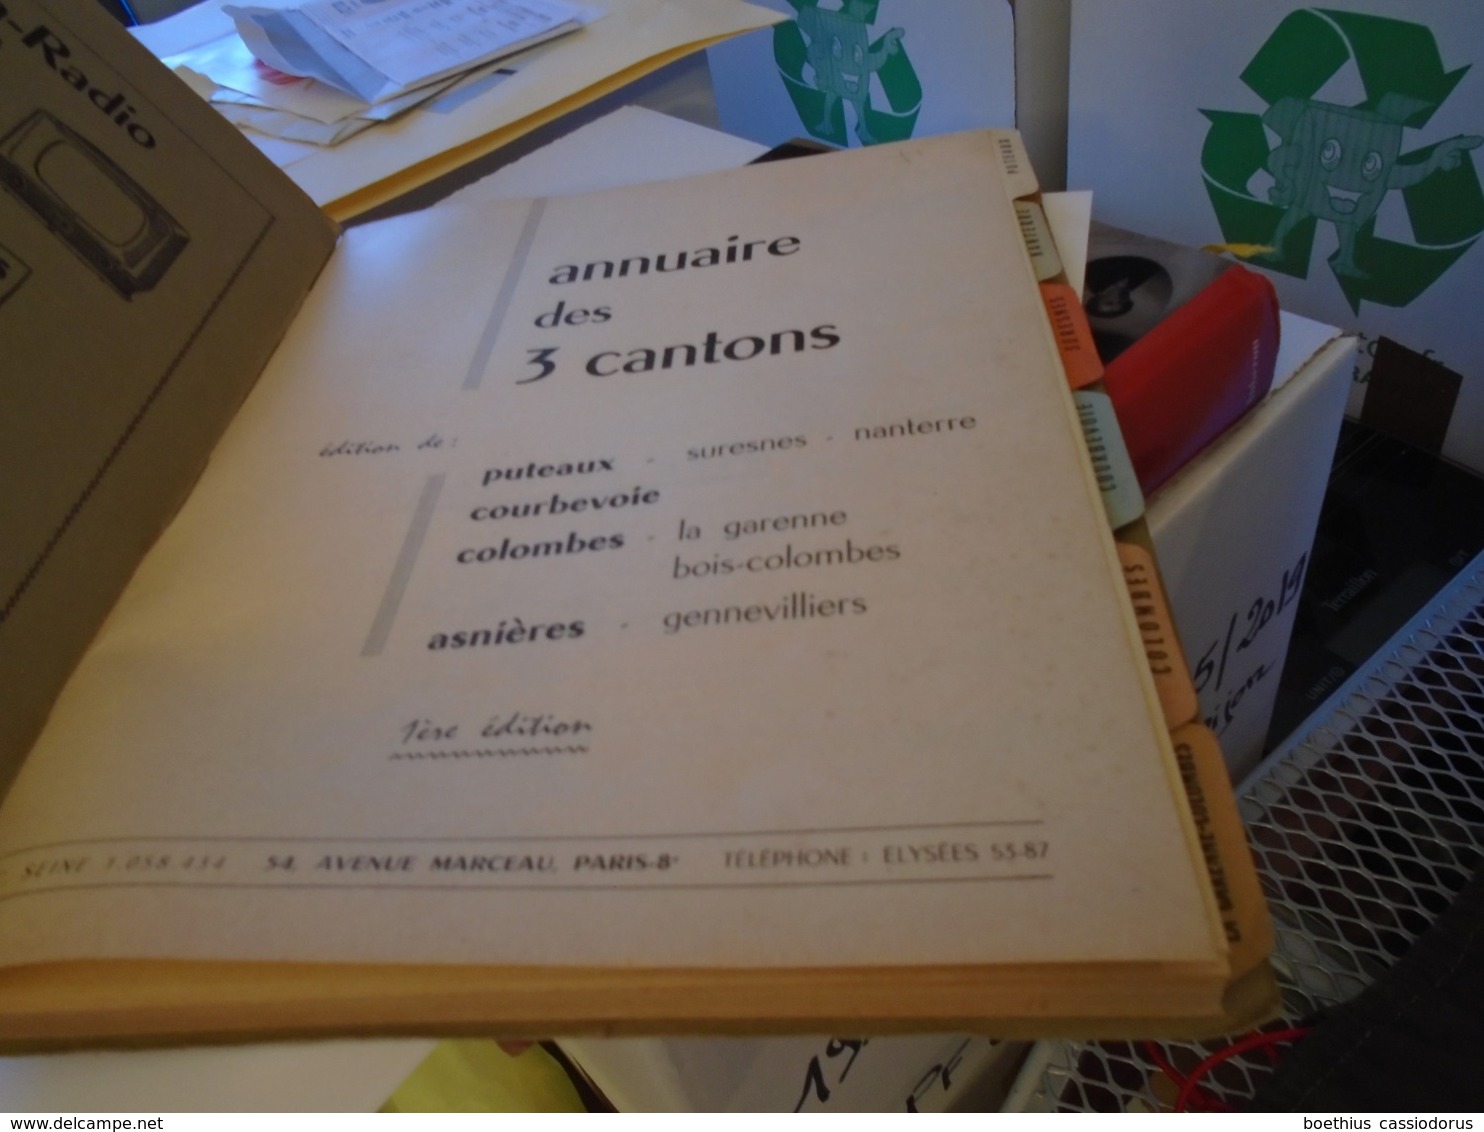 ANNUAIRE DES 3 CANTONS PUTEAUX - SURESNES - NANTERRE COURBEVOIE COLOMBES - LA GARENNE - BOIS-COLOMBES ASNIERES... 1958 - Ile-de-France